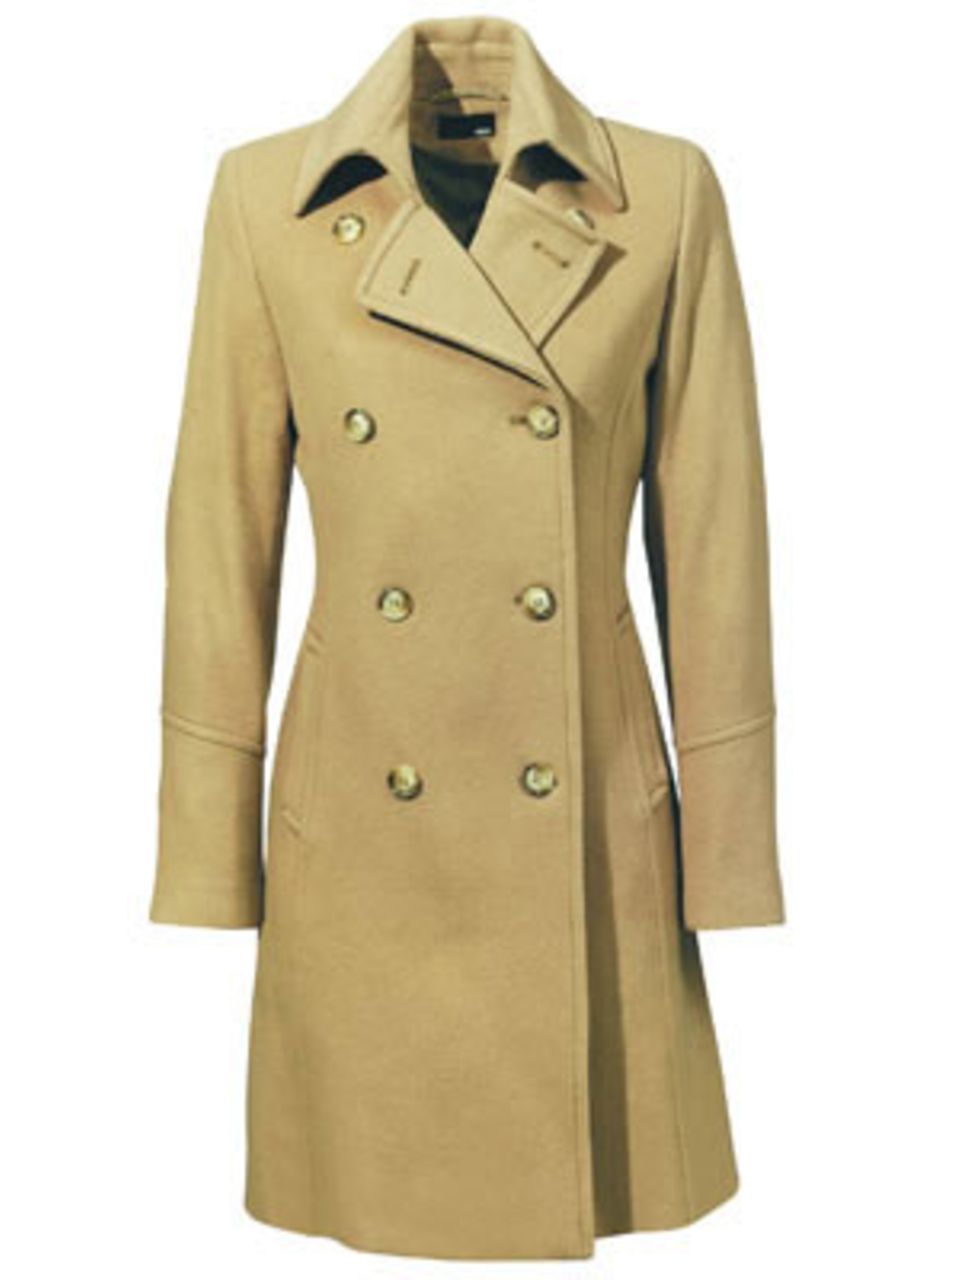 Beigefarbener Mantel von H&M, 79,90 Euro